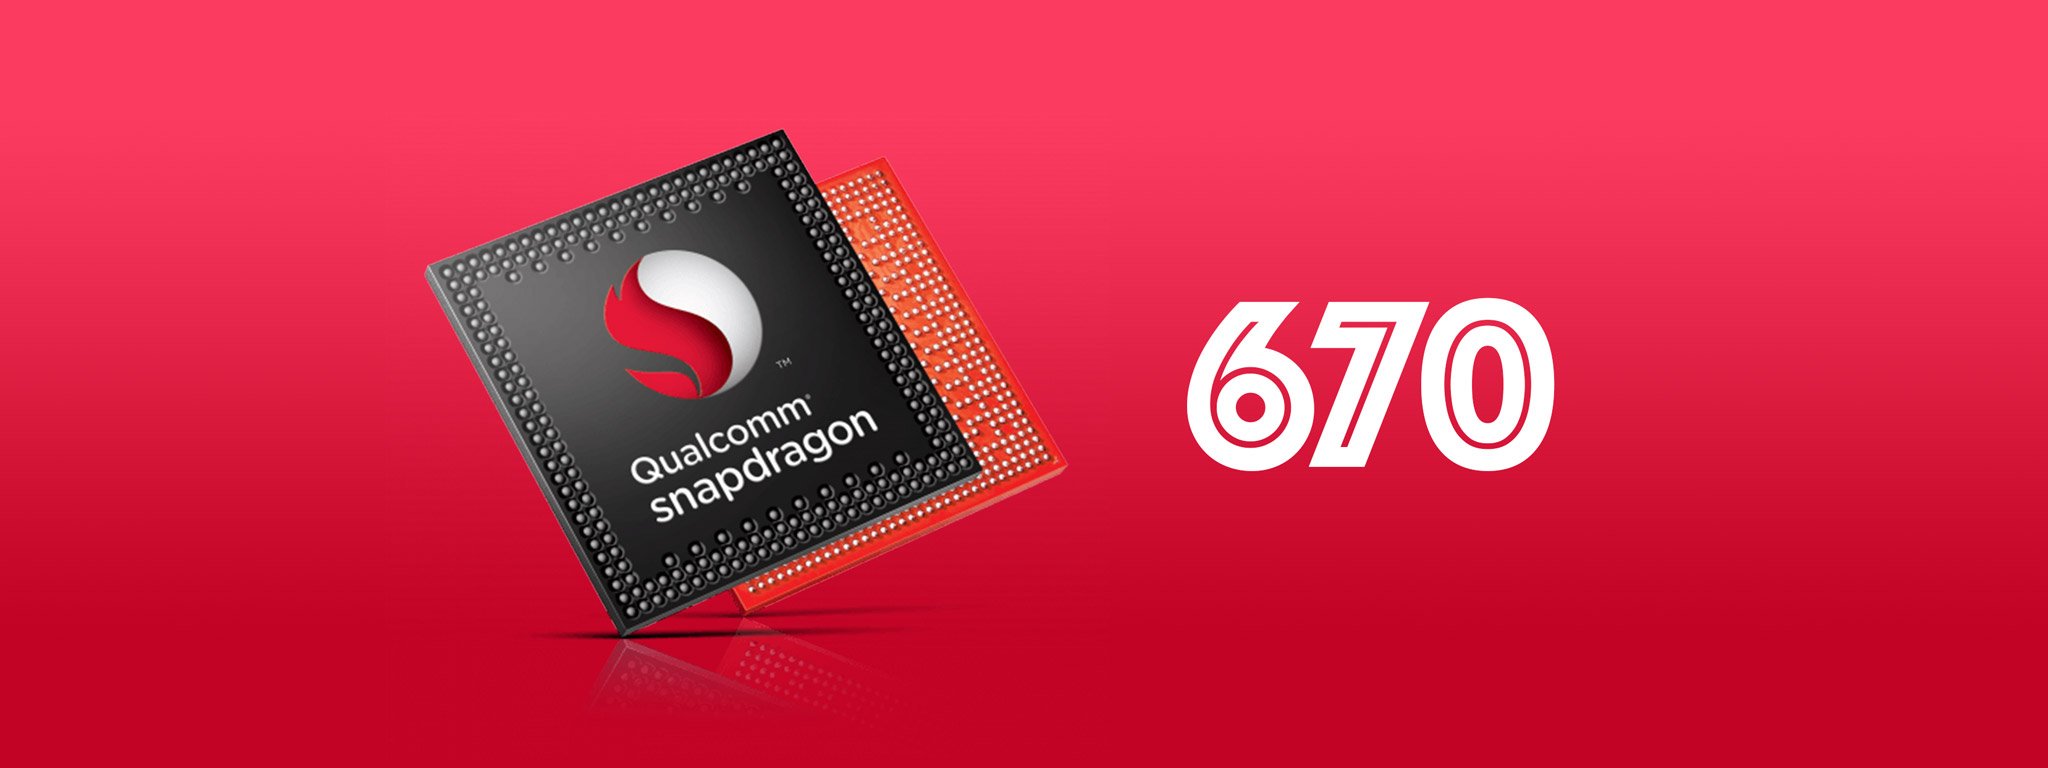 Năm sau Qualcomm sẽ ra mắt chip Snapdragon 670 mạnh gần bằng Snap 8xx, GPU nhanh hơn, 10nm?